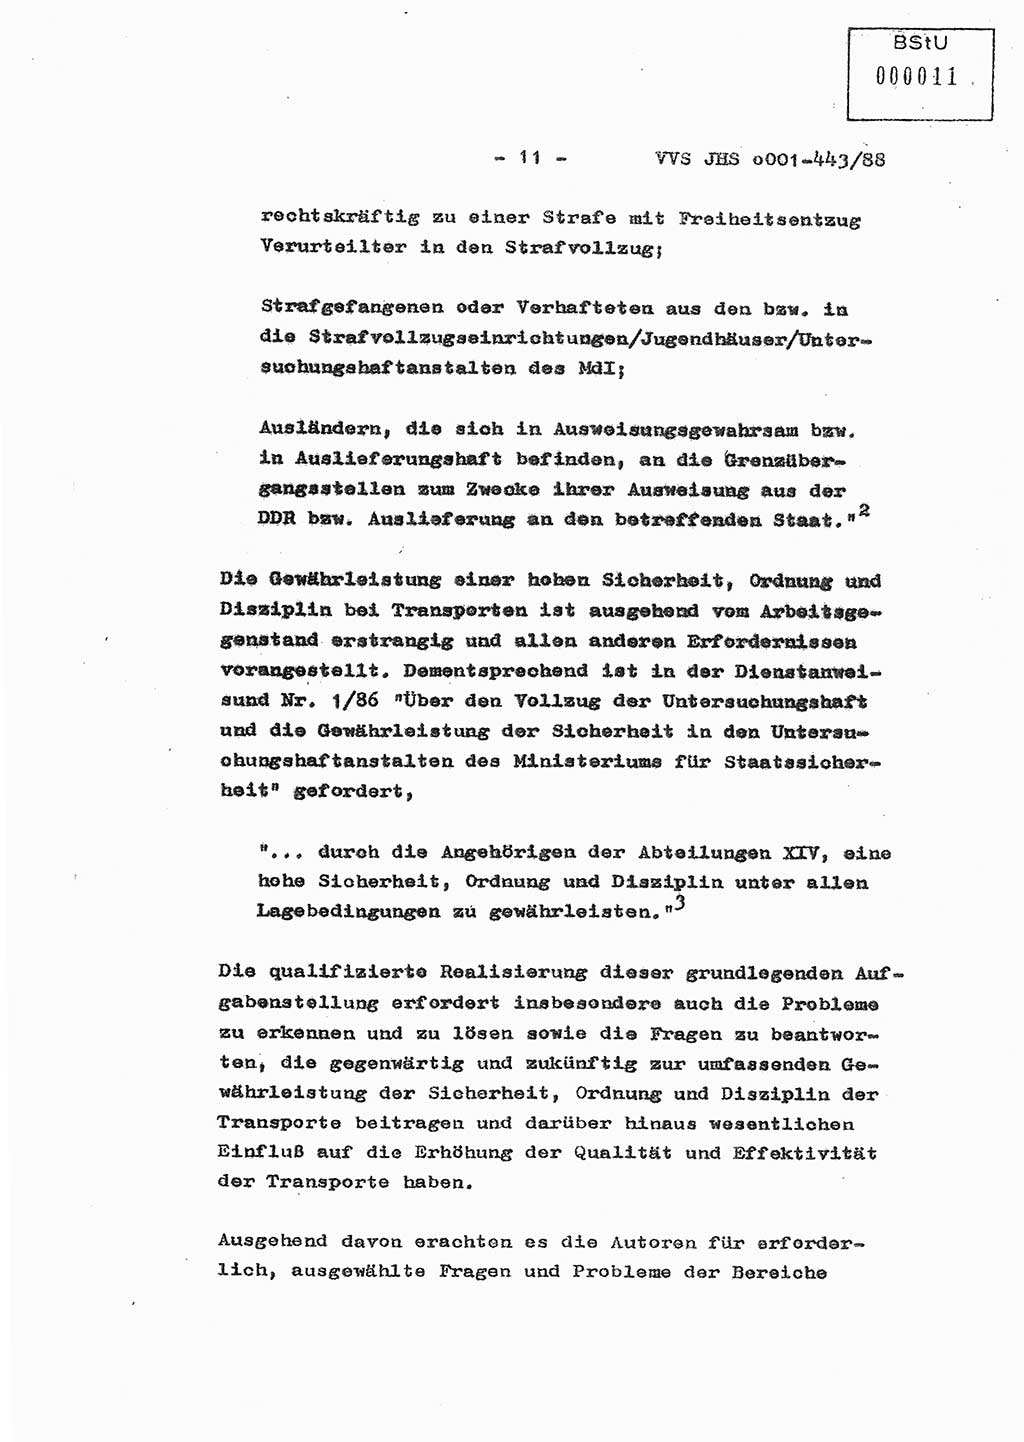 Diplomarbeit Hauptmann Michael Rast (Abt. ⅩⅣ), Major Bernd Rahaus (Abt. ⅩⅣ), Ministerium für Staatssicherheit (MfS) [Deutsche Demokratische Republik (DDR)], Juristische Hochschule (JHS), Vertrauliche Verschlußsache (VVS) o001-443/88, Potsdam 1988, Seite 11 (Dipl.-Arb. MfS DDR JHS VVS o001-443/88 1988, S. 11)